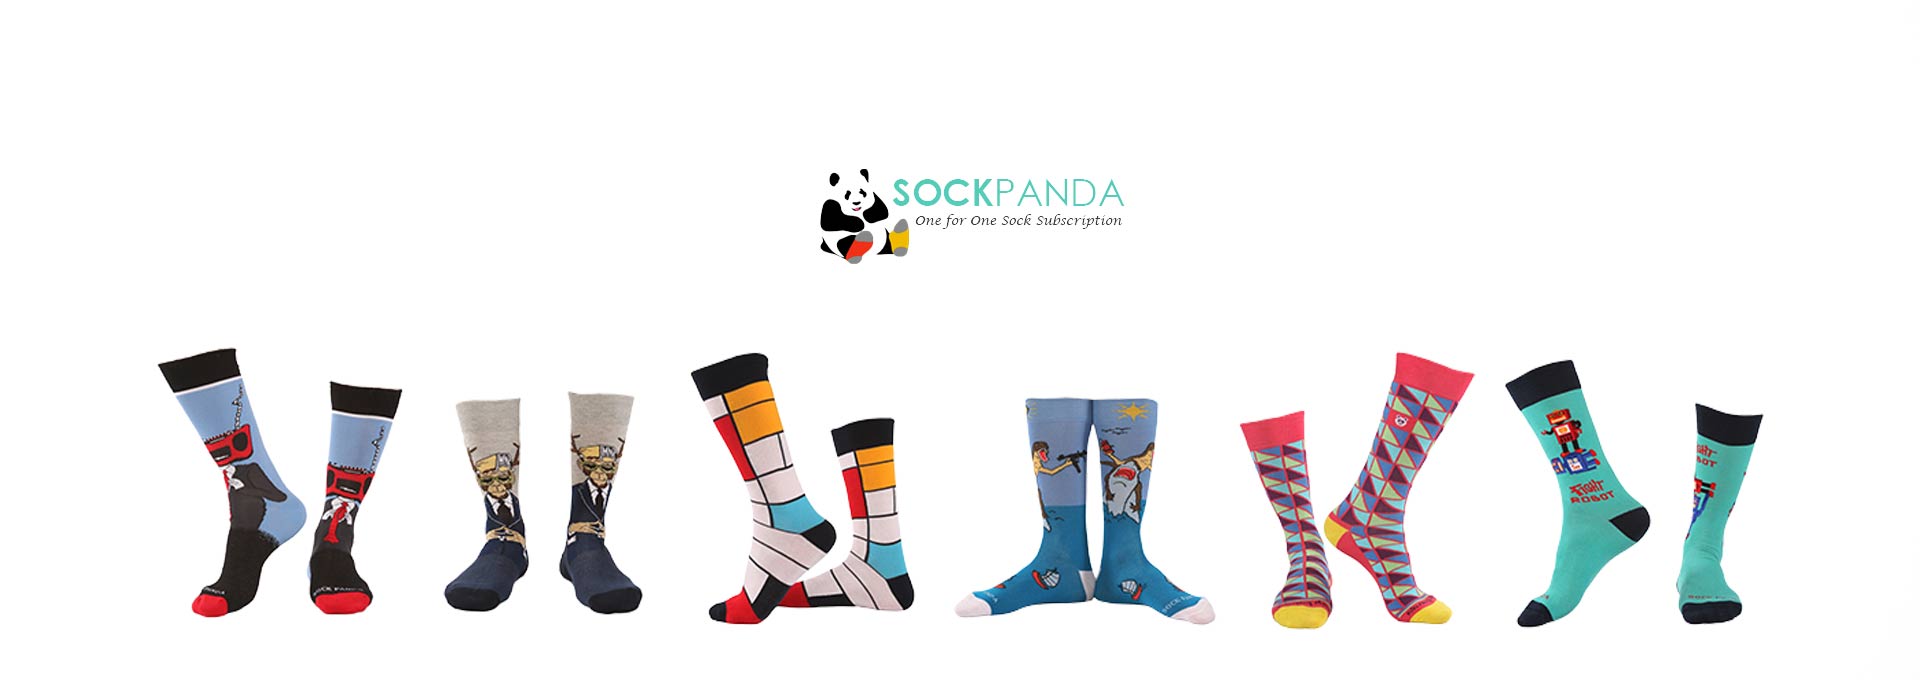 Sock Panda Review